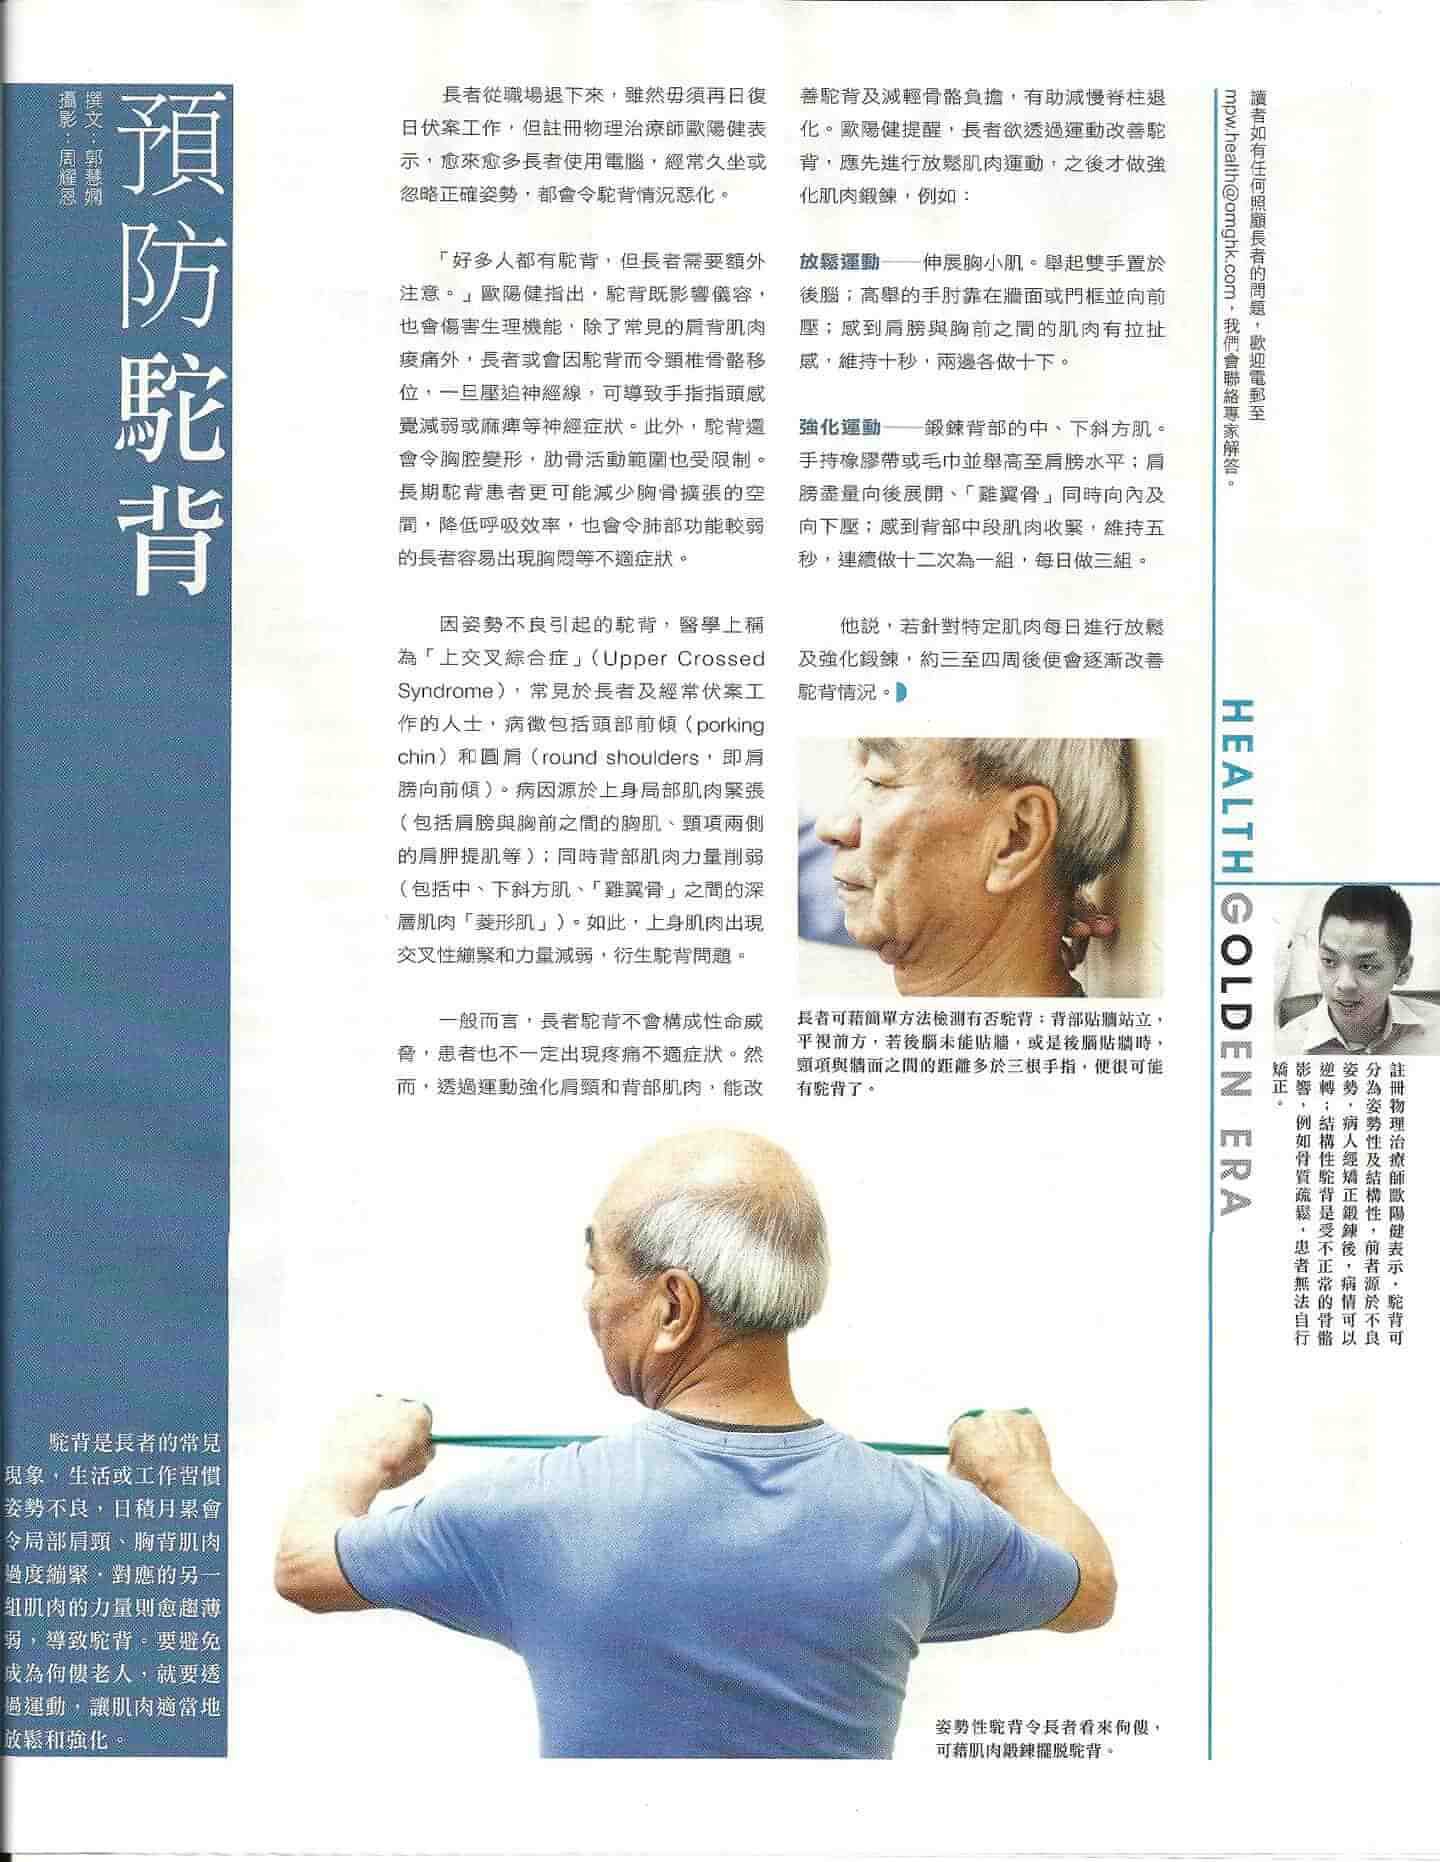 預防駝背 (明報周刊 6 Jul 2013)